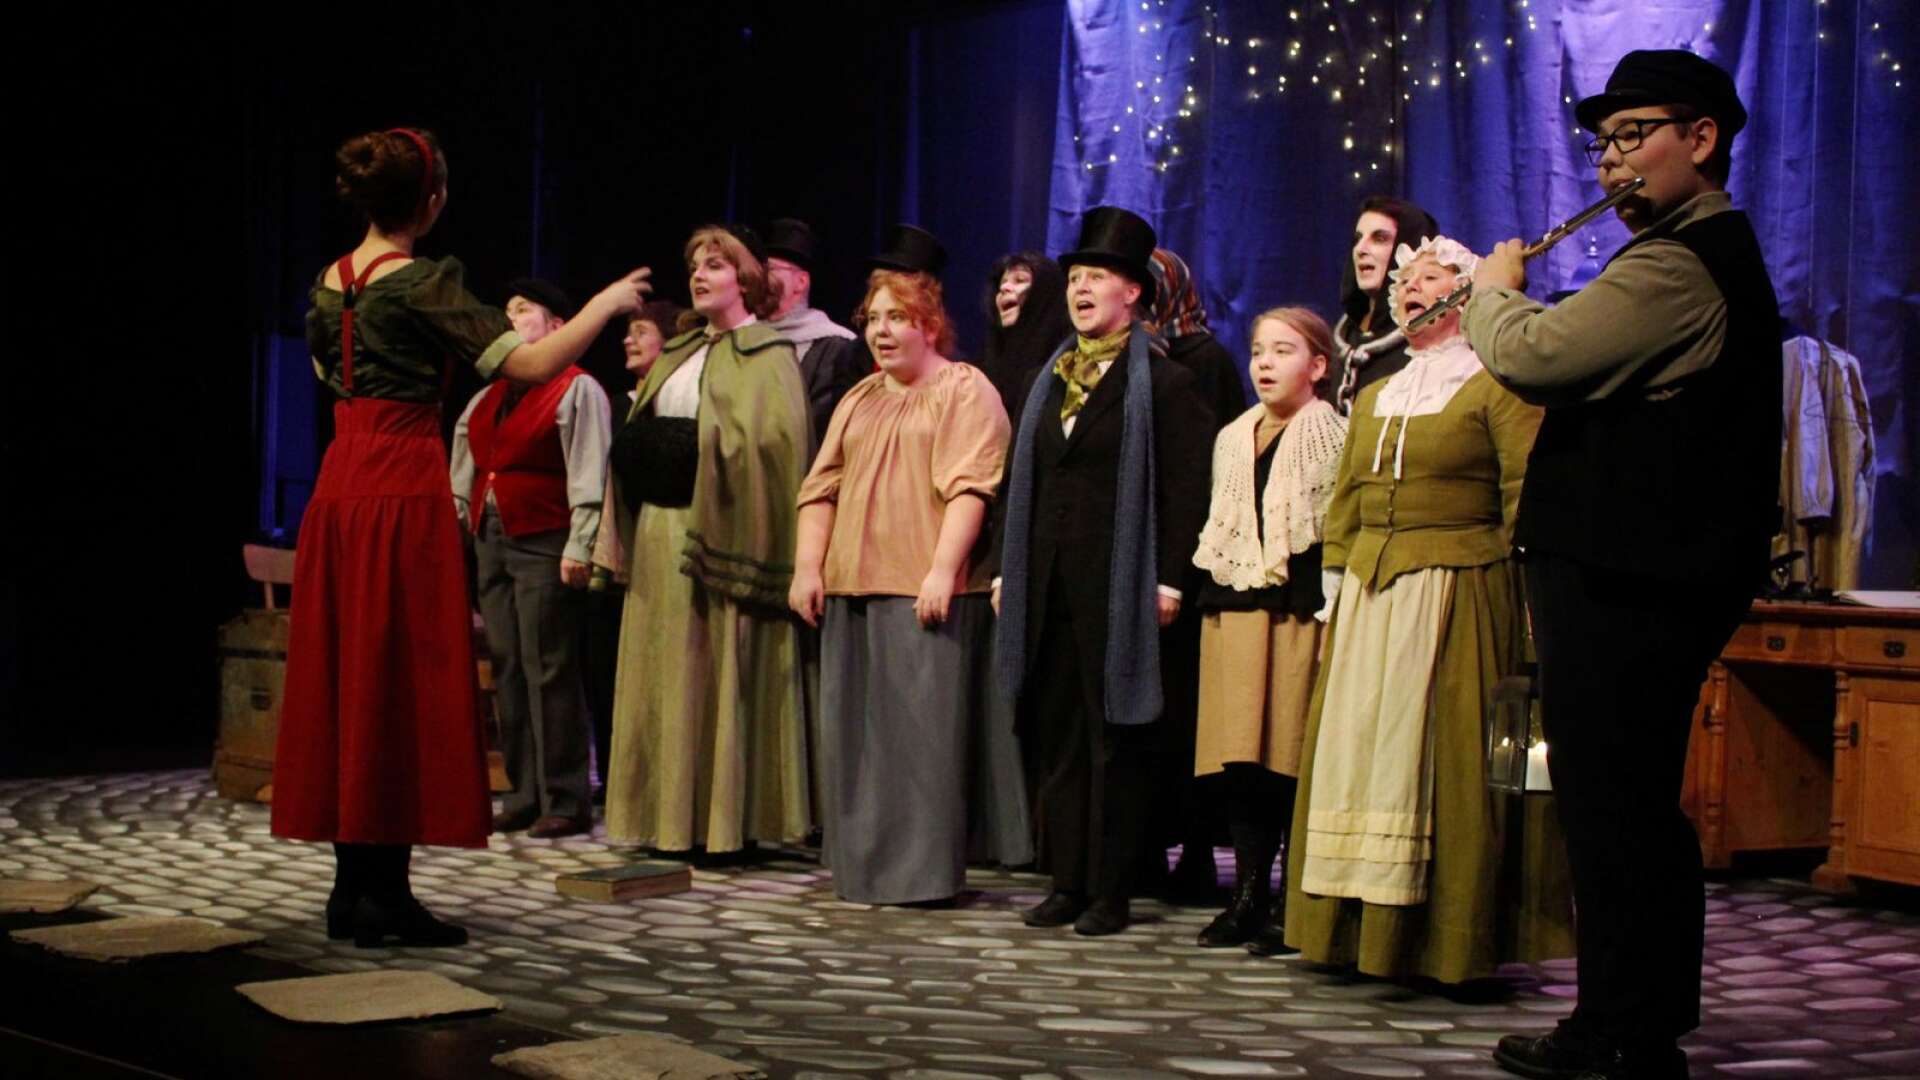 Pjäsen inleddes med en körsång med samtliga skådespelare.